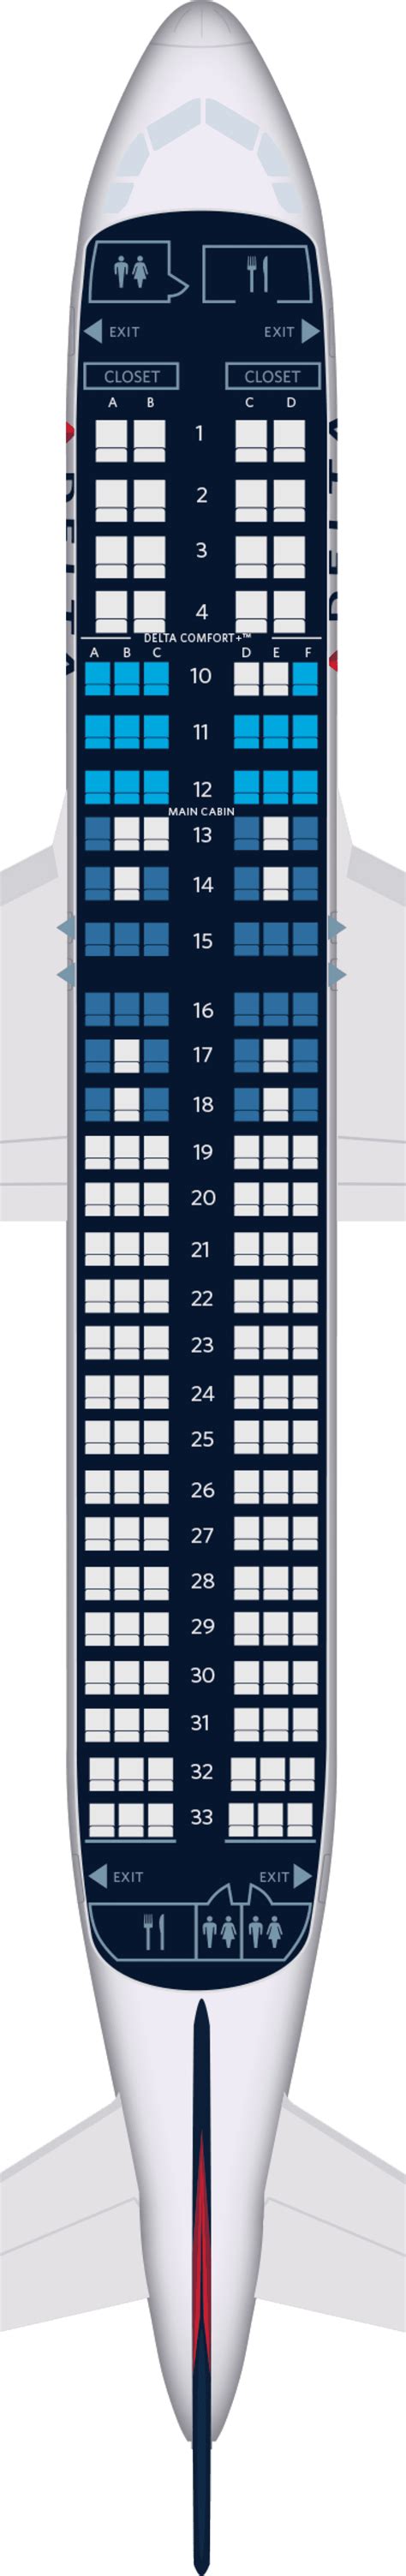 Airbus A320 200 Seat Map Mobil Pribadi